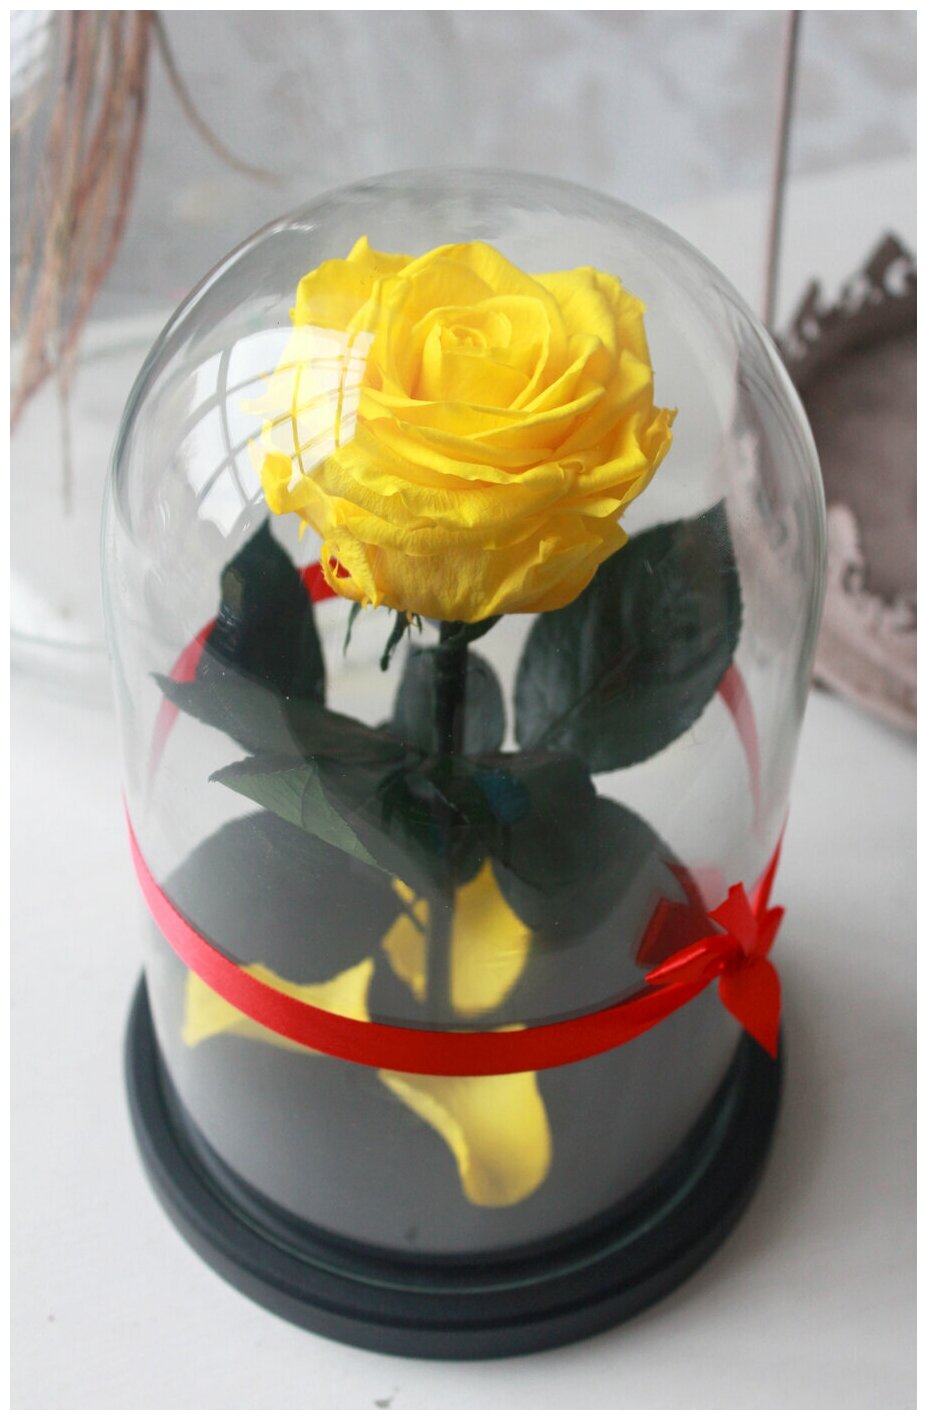 Живая Роза в колбе Therosedome Premium 7-8 см стабилизированная, цветок в колбе, вечная роза, подарок, декор для интерьера, цвет: желтый